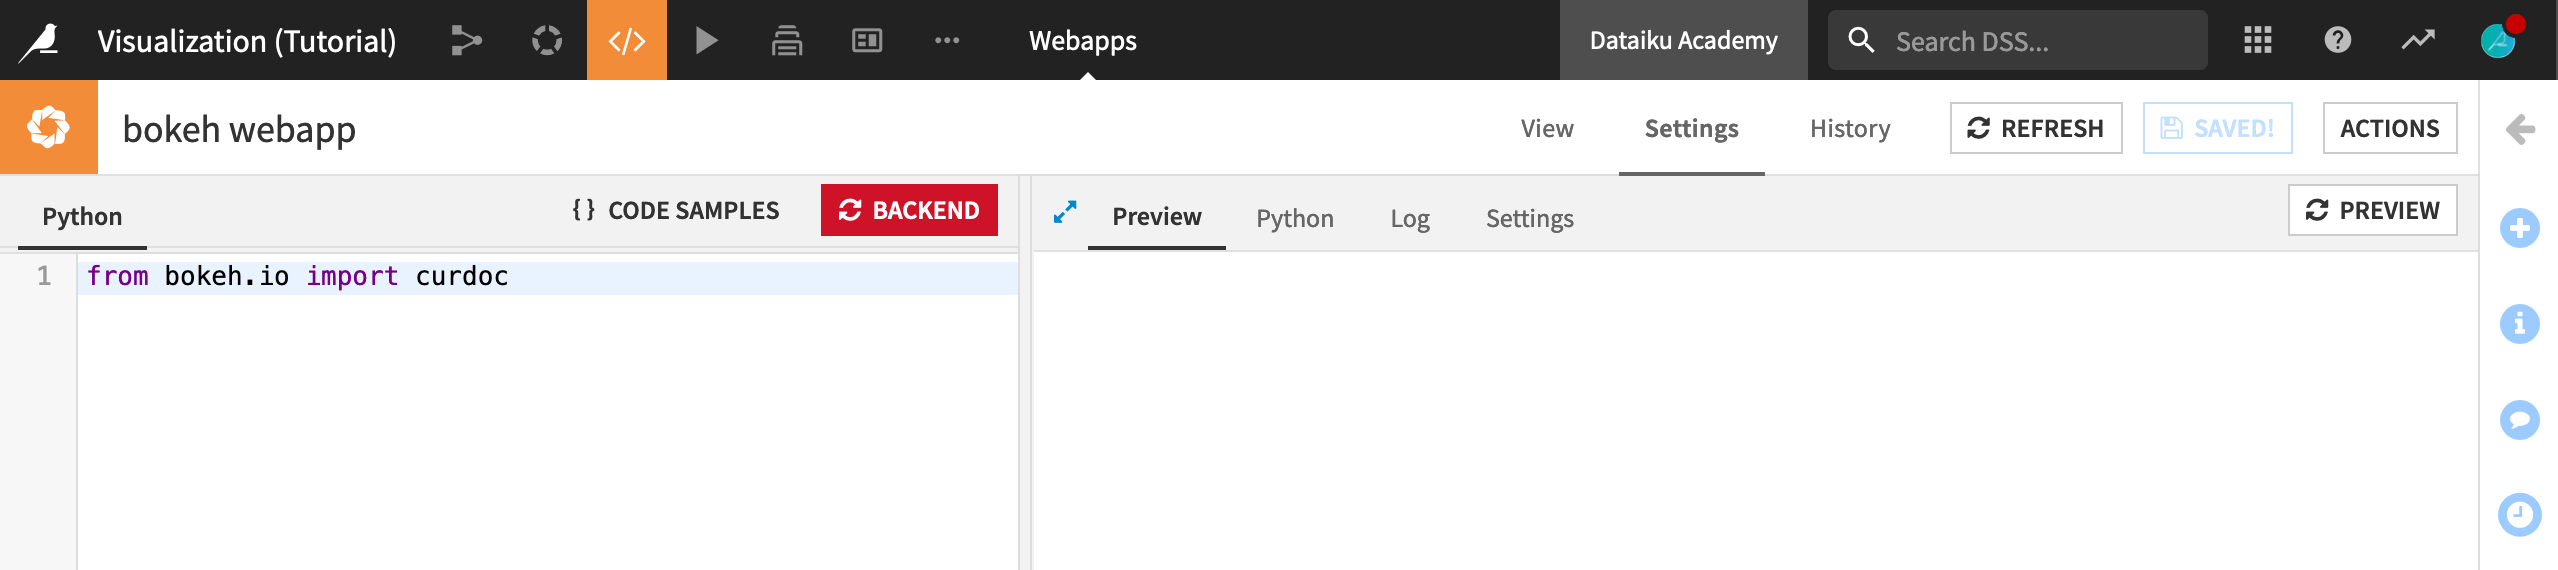 Dataiku screenshot of an empty bokeh webapp.